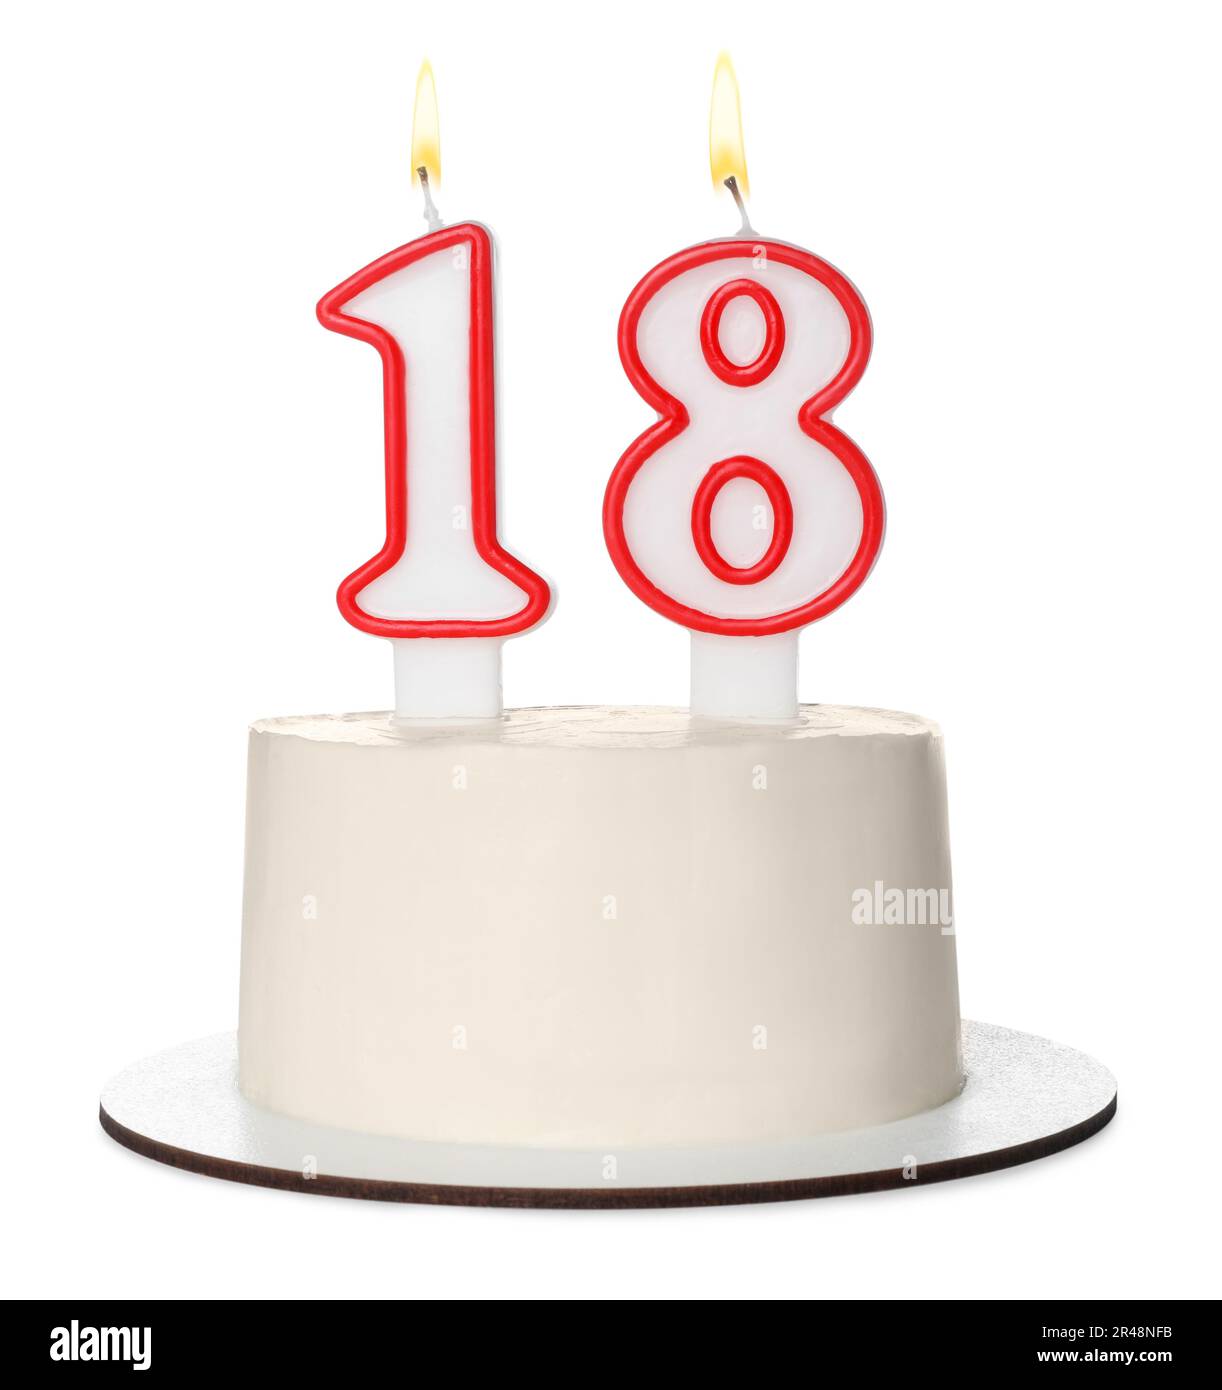 Zum 18. Geburtstag. Köstlicher Kuchen mit zahlenförmigen Kerzen für eine Party, isoliert auf Weiß Stockfoto